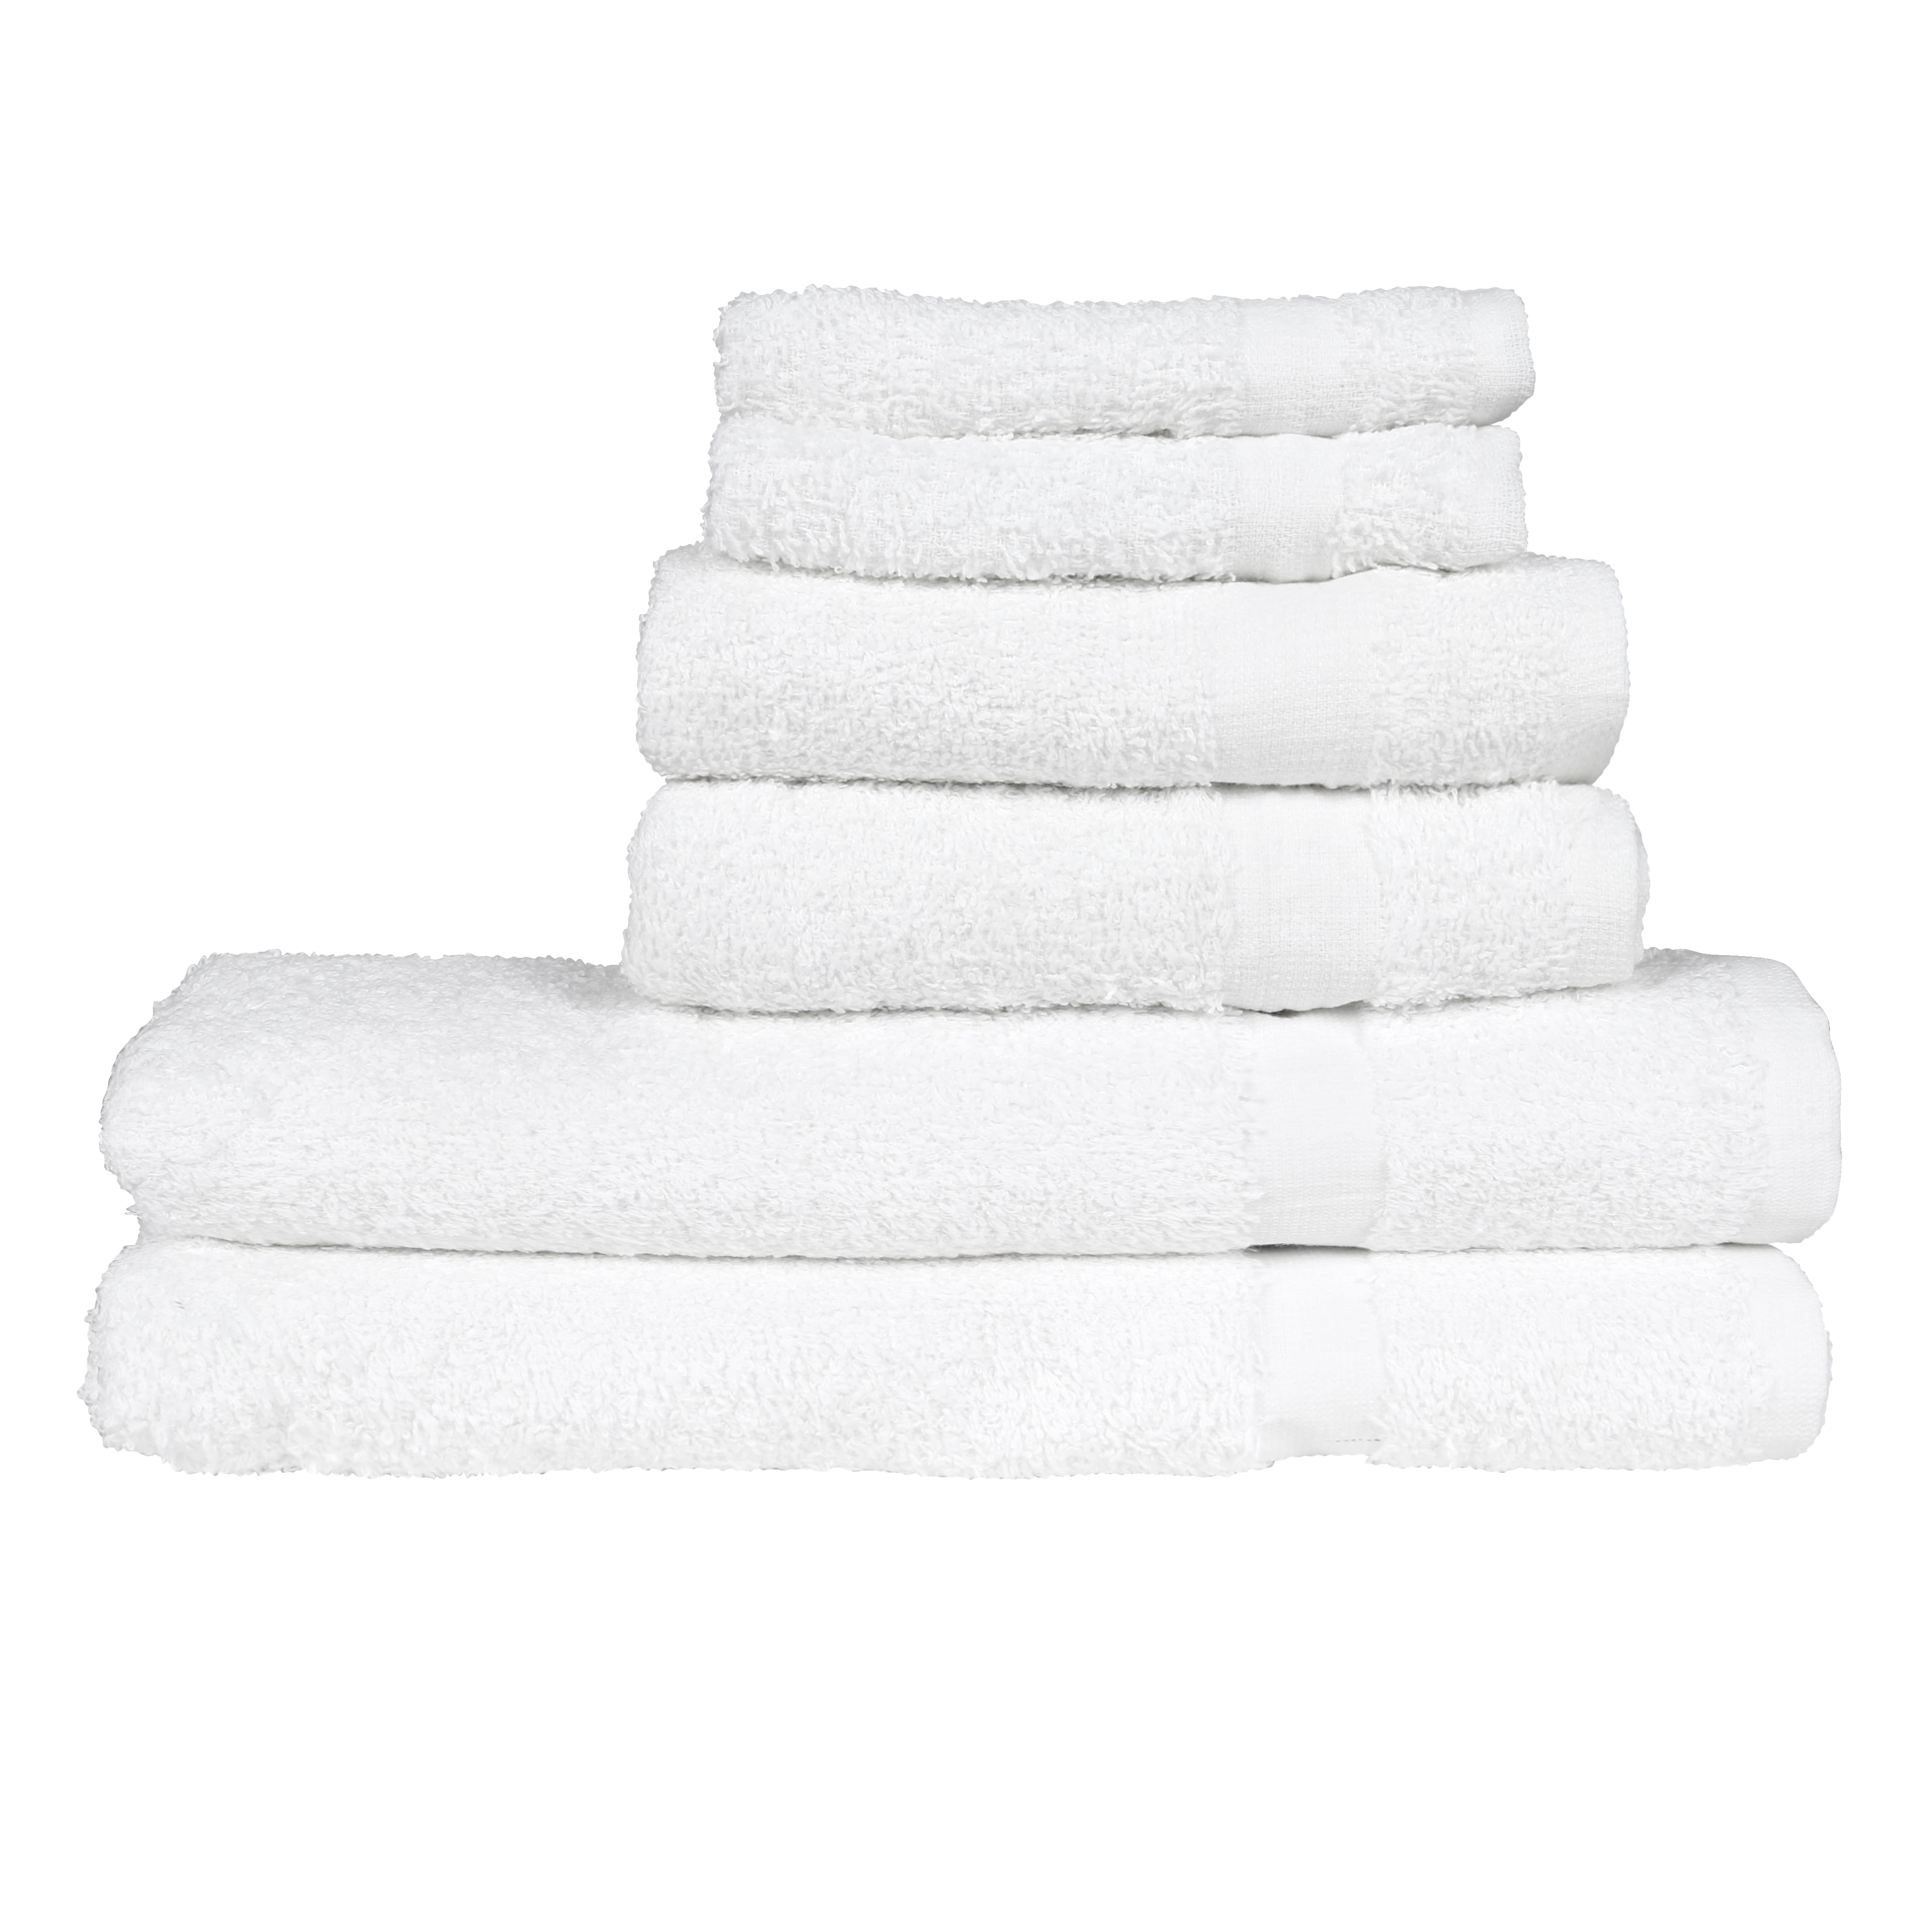 2 pieces , Multi-MvO Details about  / JBG Home Store 450 gsm GSM Cotton Bath towel